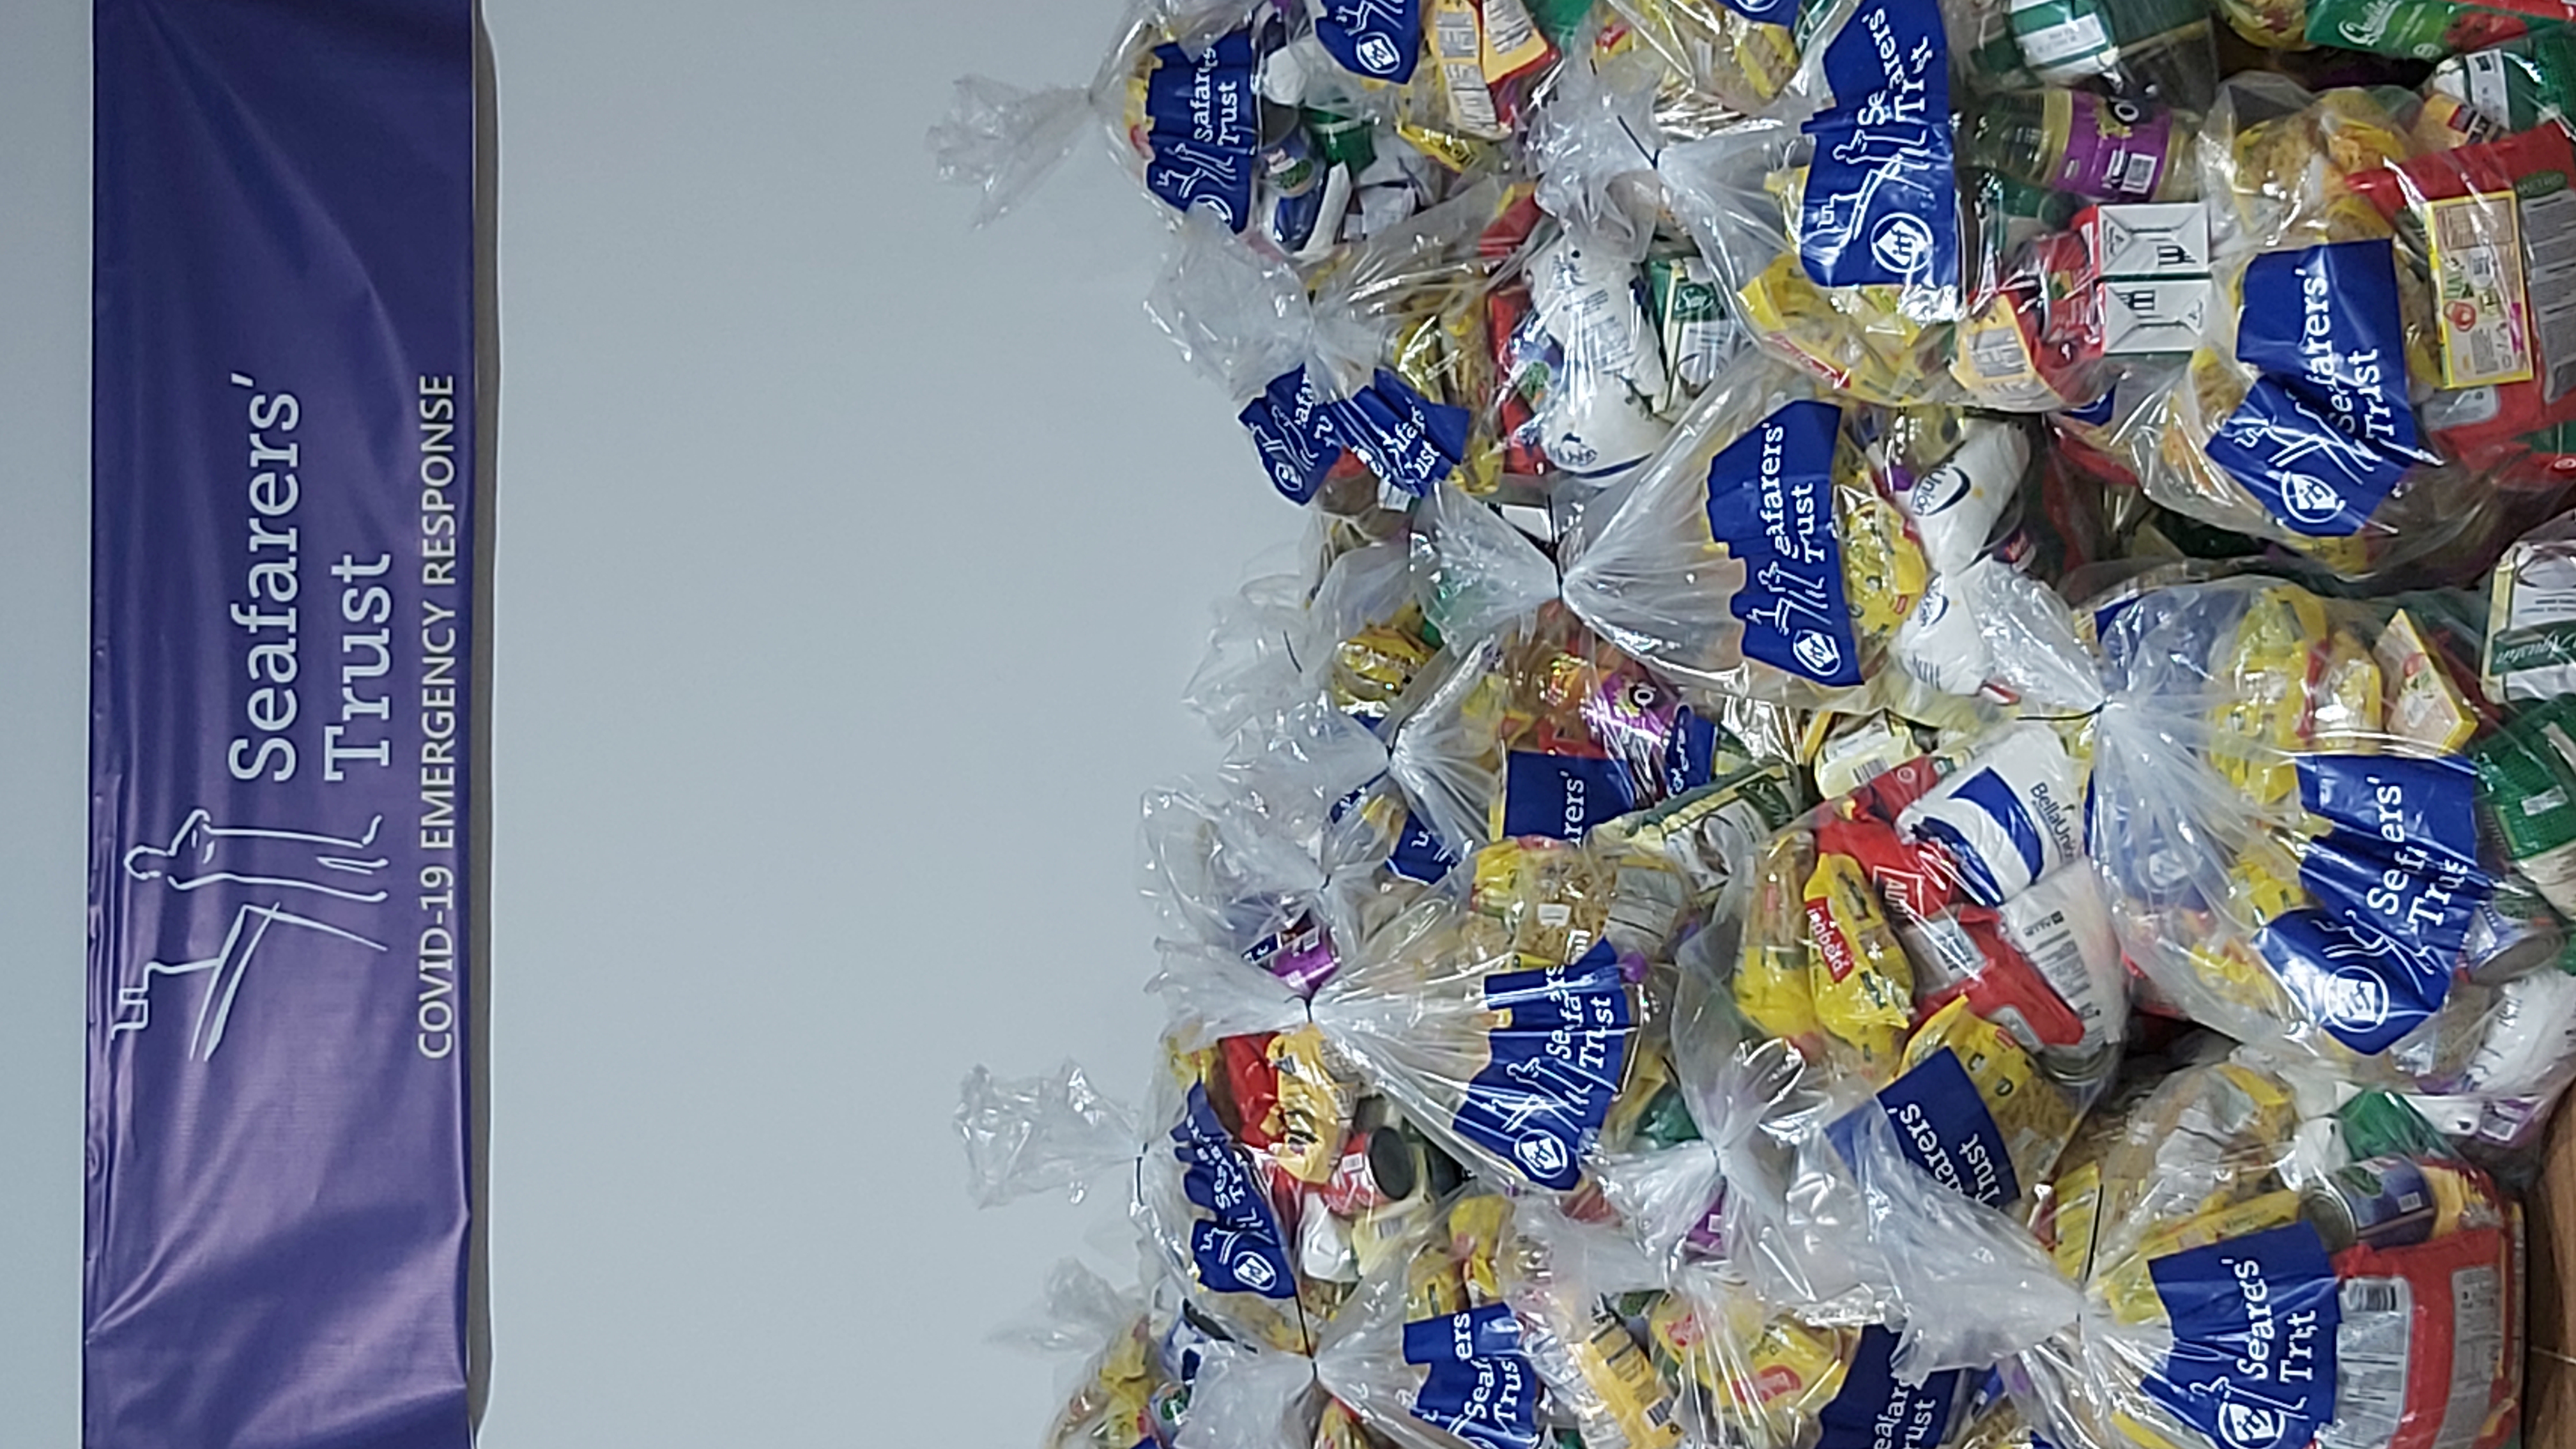 Imagen de una pila de paquetes de alimentos y suministros de higiene esenciales en bolsas transparentes